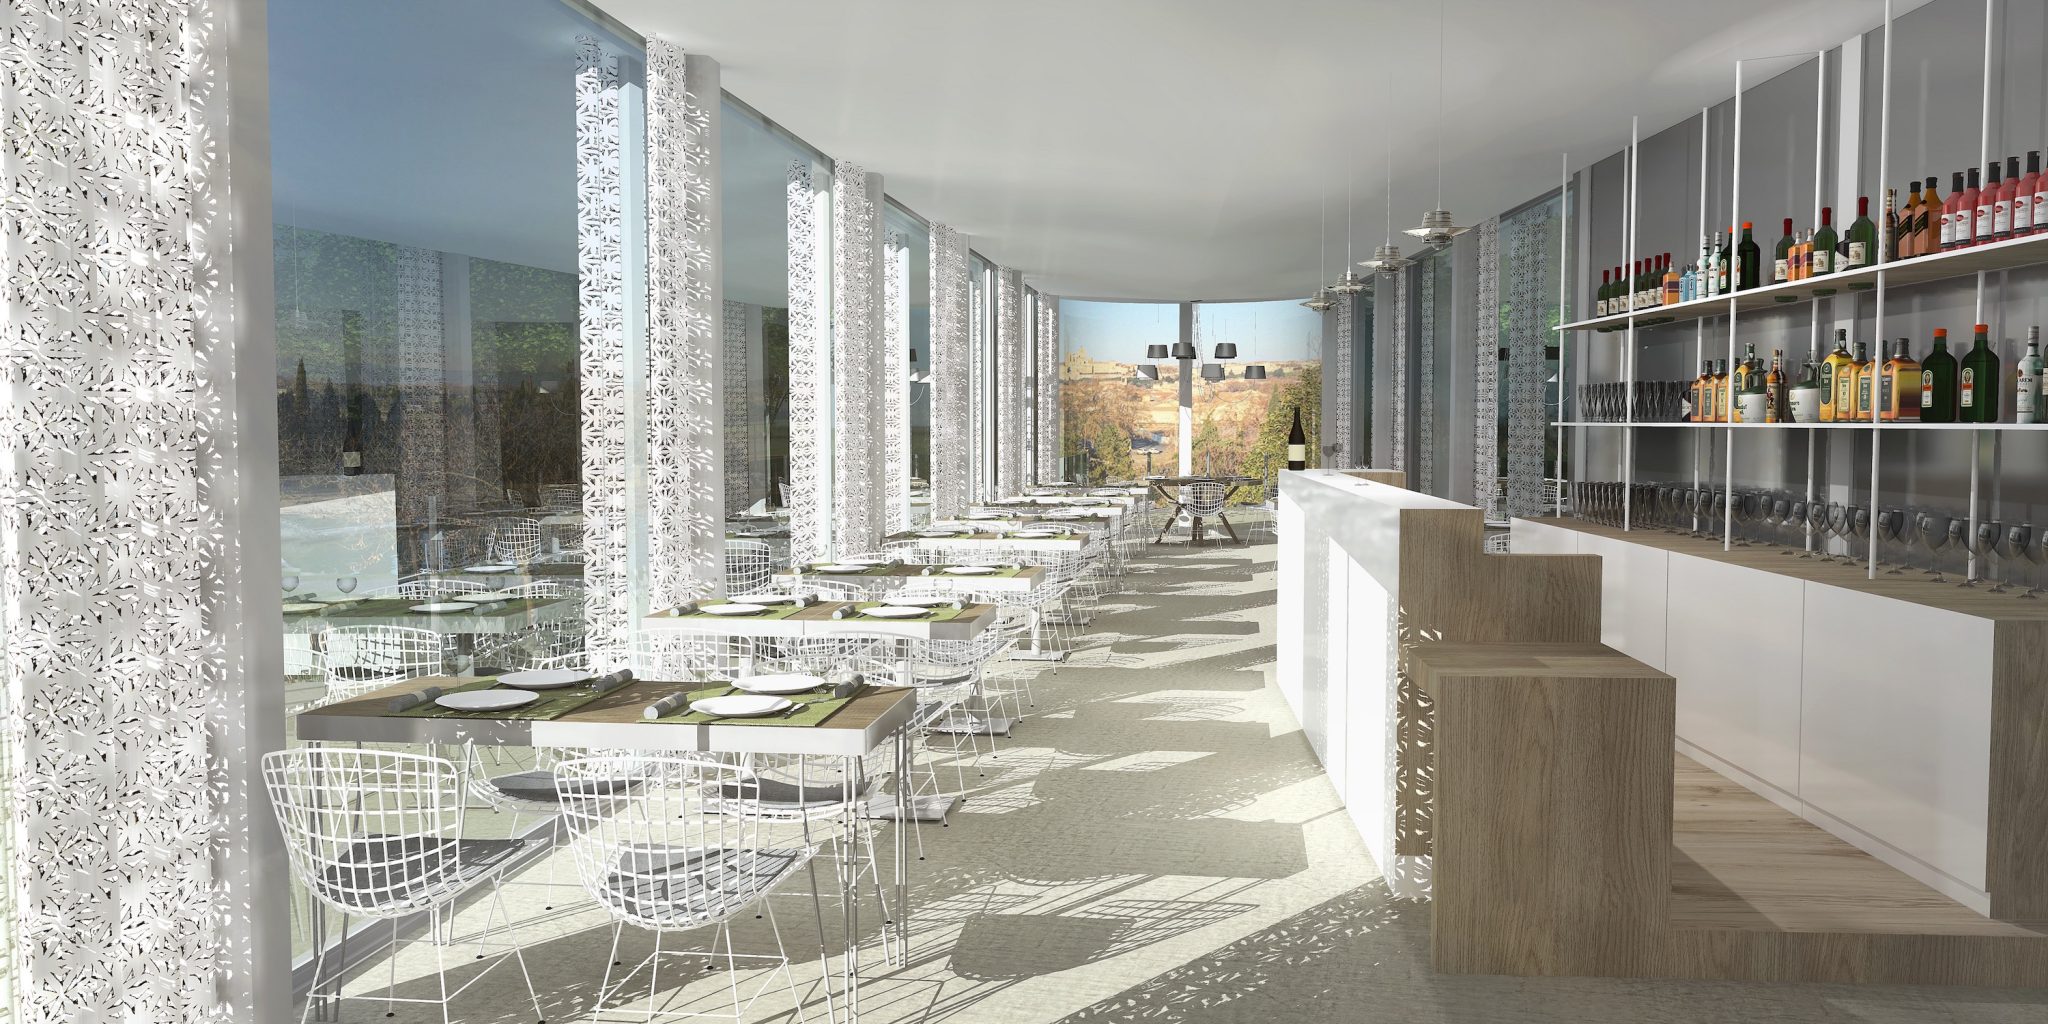 3D perspective fonserane restaurant 2